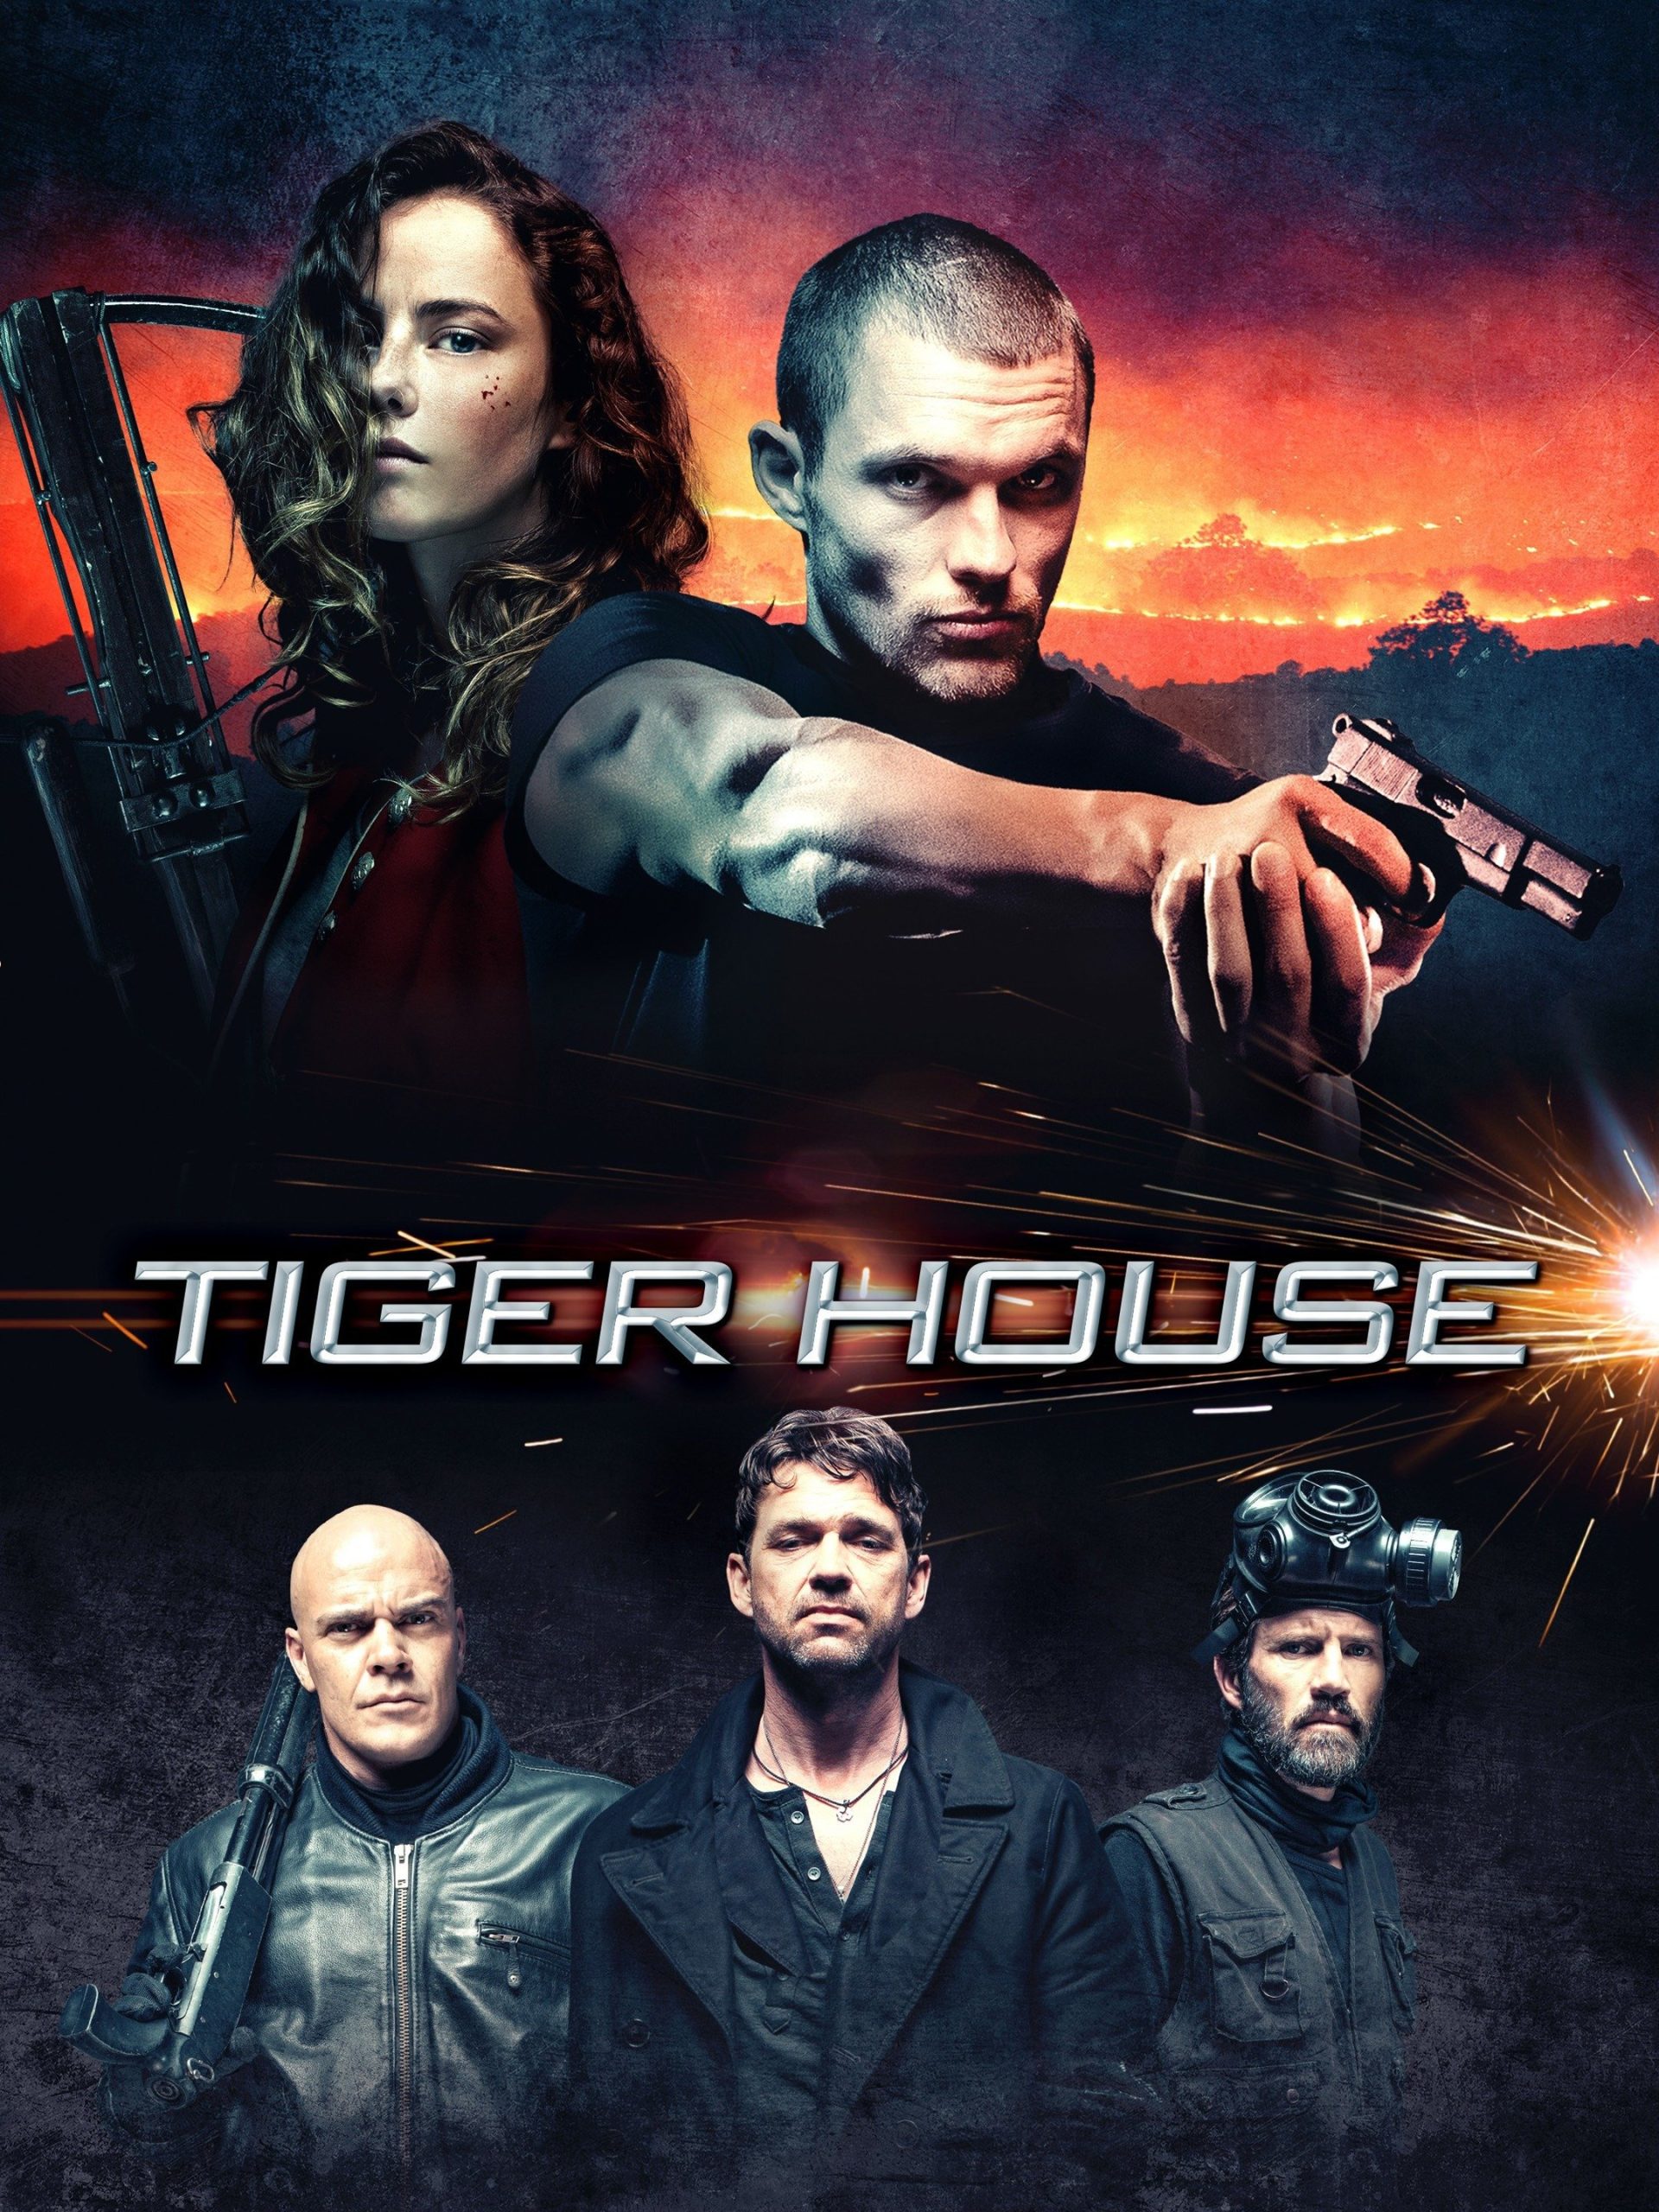 ดูหนังออนไลน์ฟรี Tiger House (2015) ไทเกอร์เฮาส์ หนังเต็มเรื่อง หนังมาสเตอร์ ดูหนังHD ดูหนังออนไลน์ ดูหนังใหม่